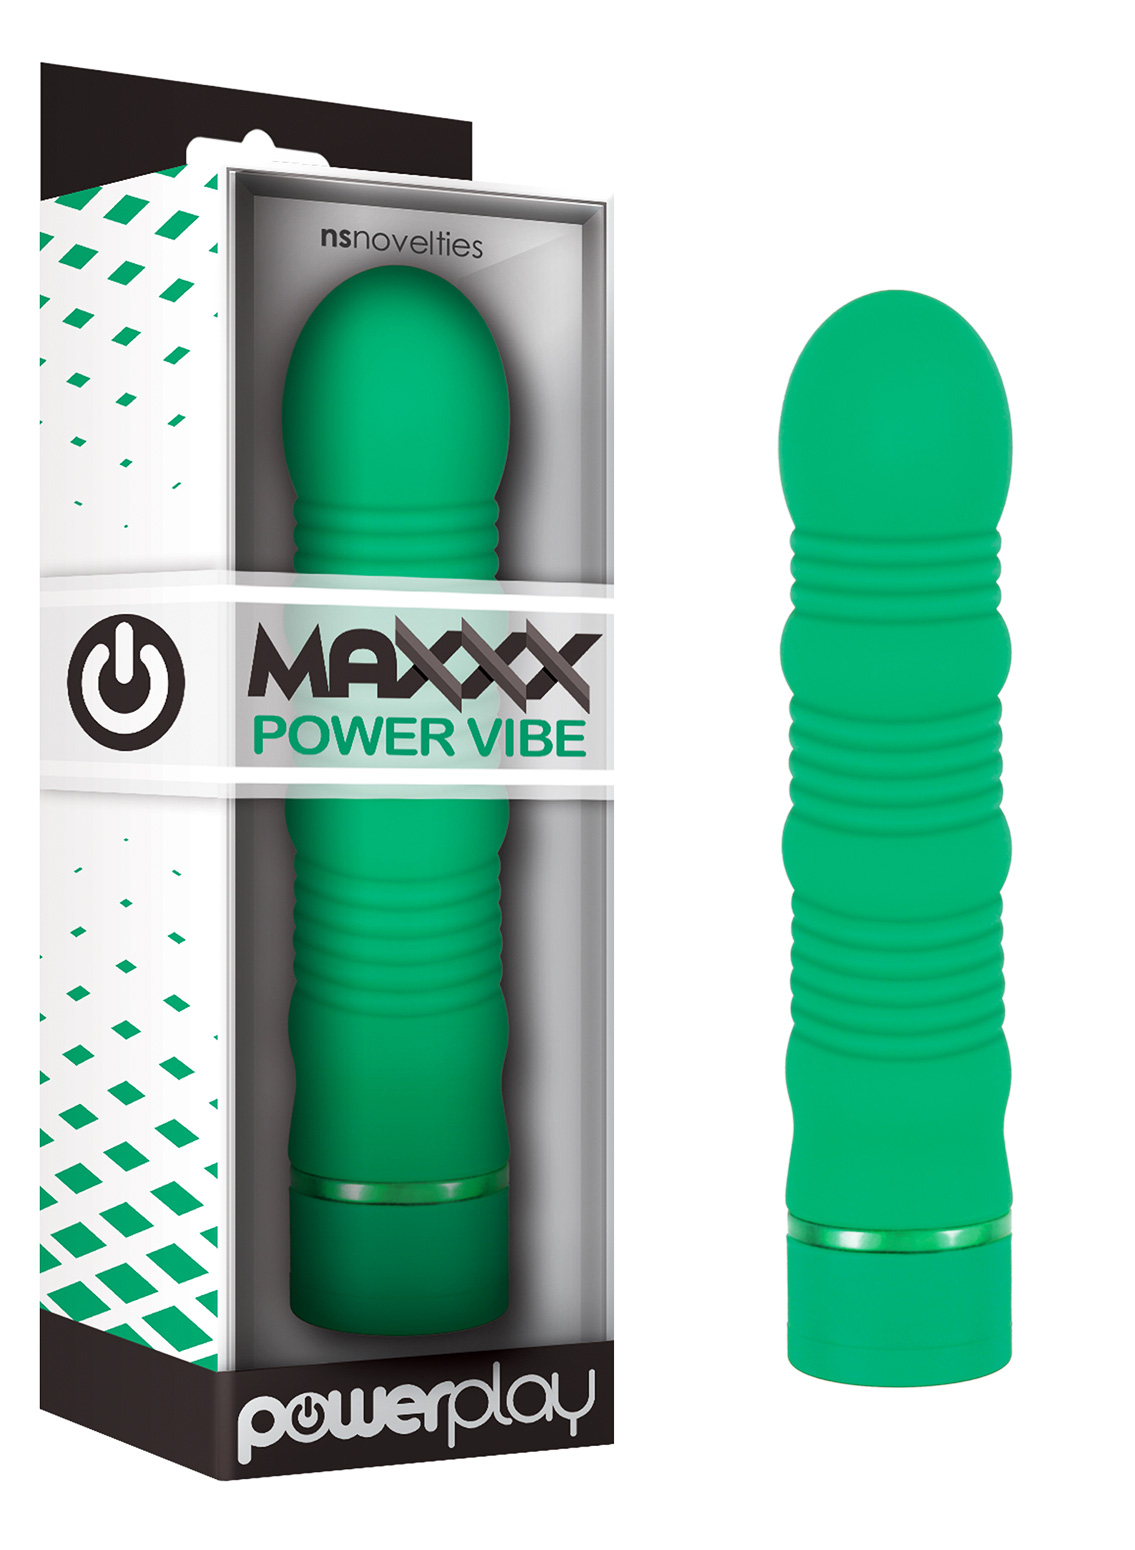 NS Novelties Maxxx Power Vibe Green